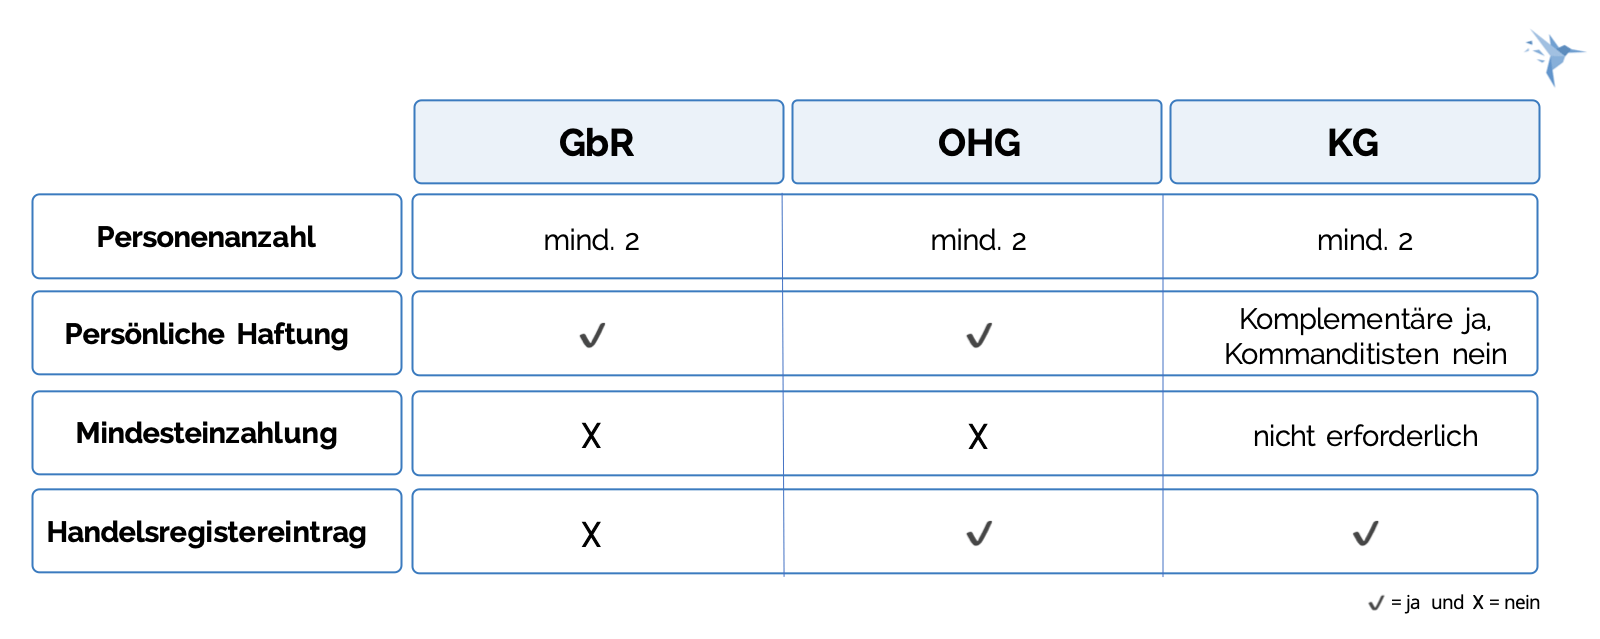 Rechtsformen - Unterschiede GbR OHG KG 